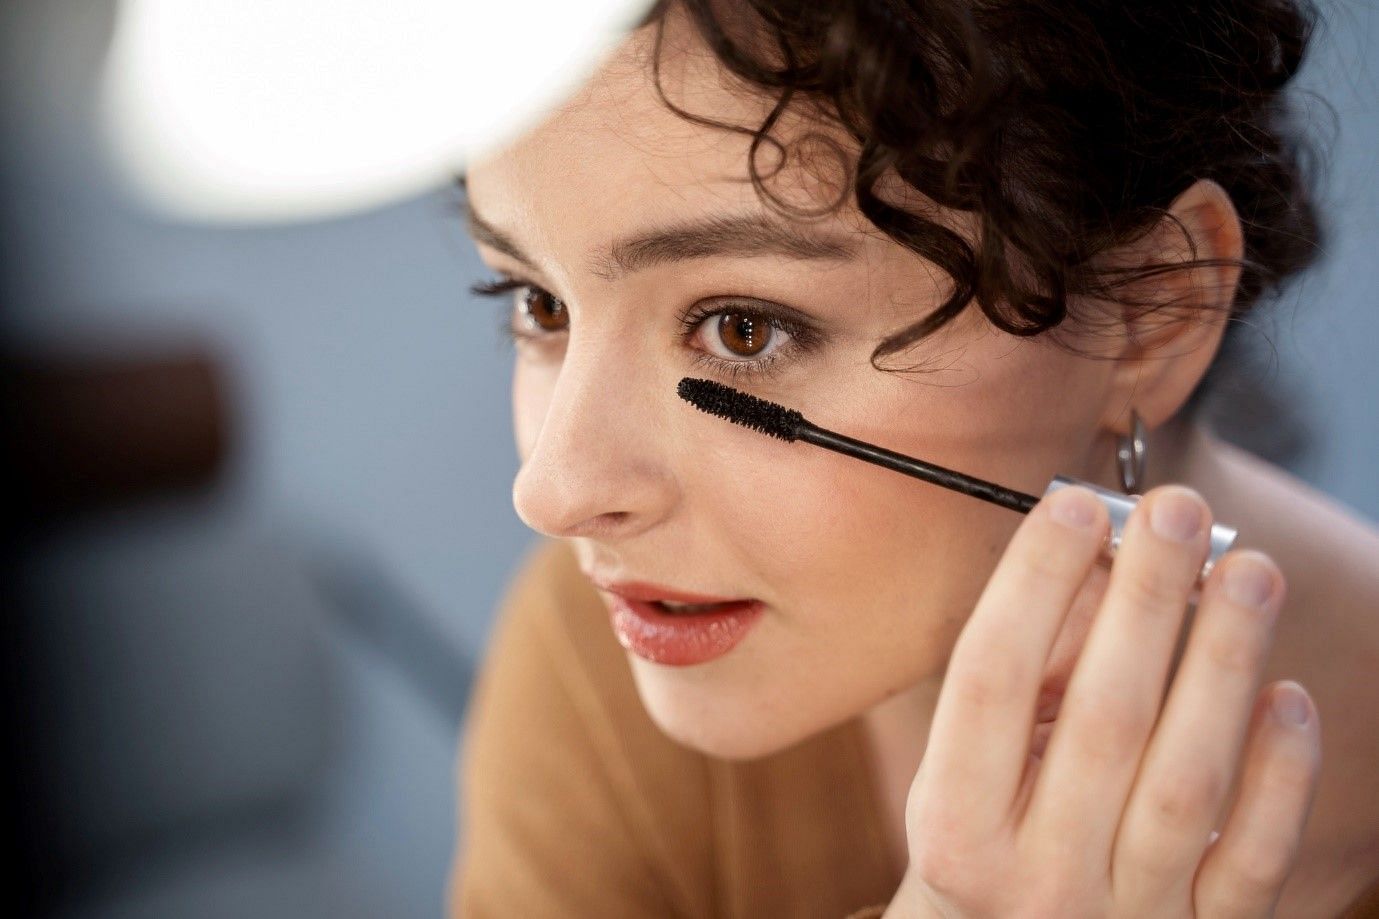 Regularly using mascara can increase breakage of lashes (Image by Freepik on Freepik)